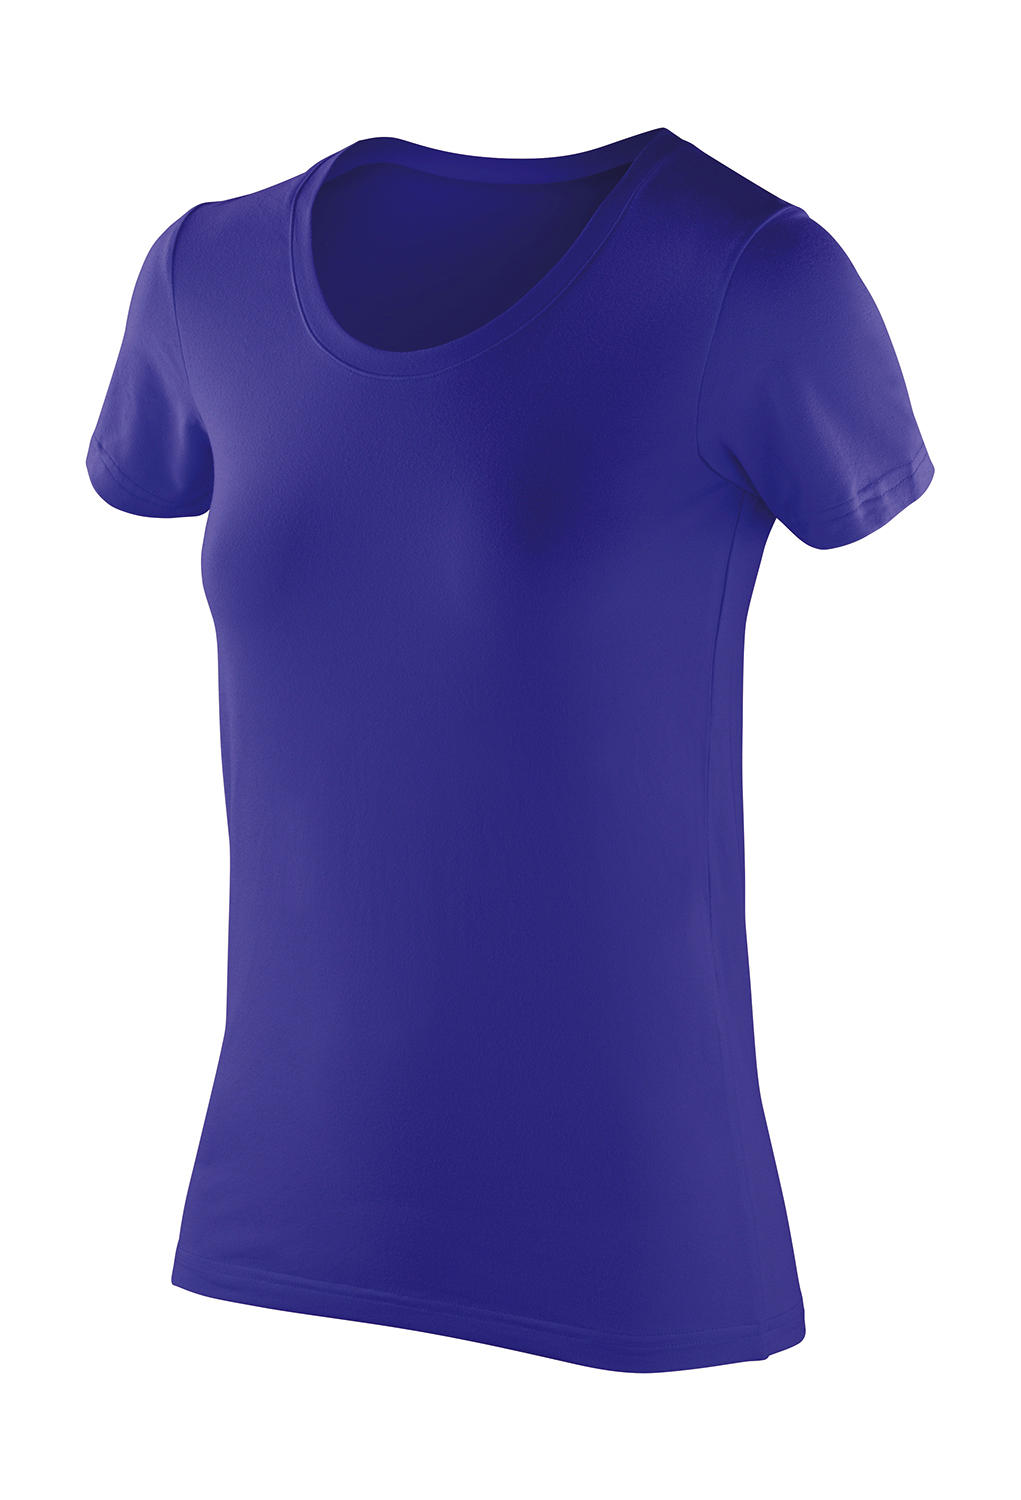  Womens Impact Softex? T-Shirt in Farbe Sapphire